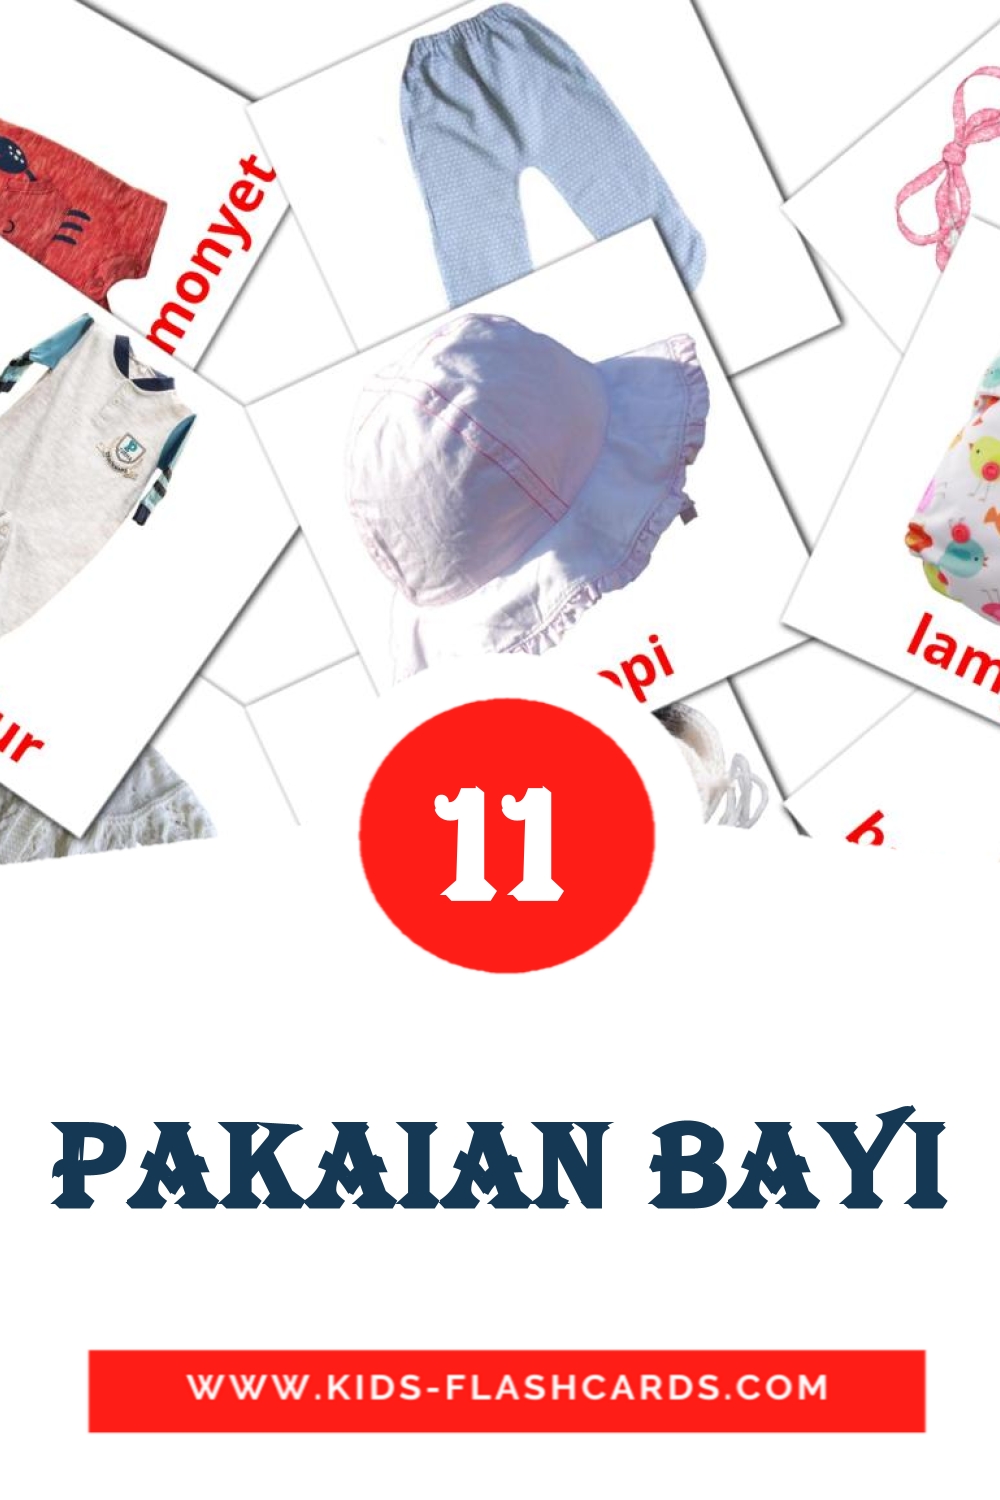 Pakaian Bayi на малайском для Детского Сада (11 карточек)